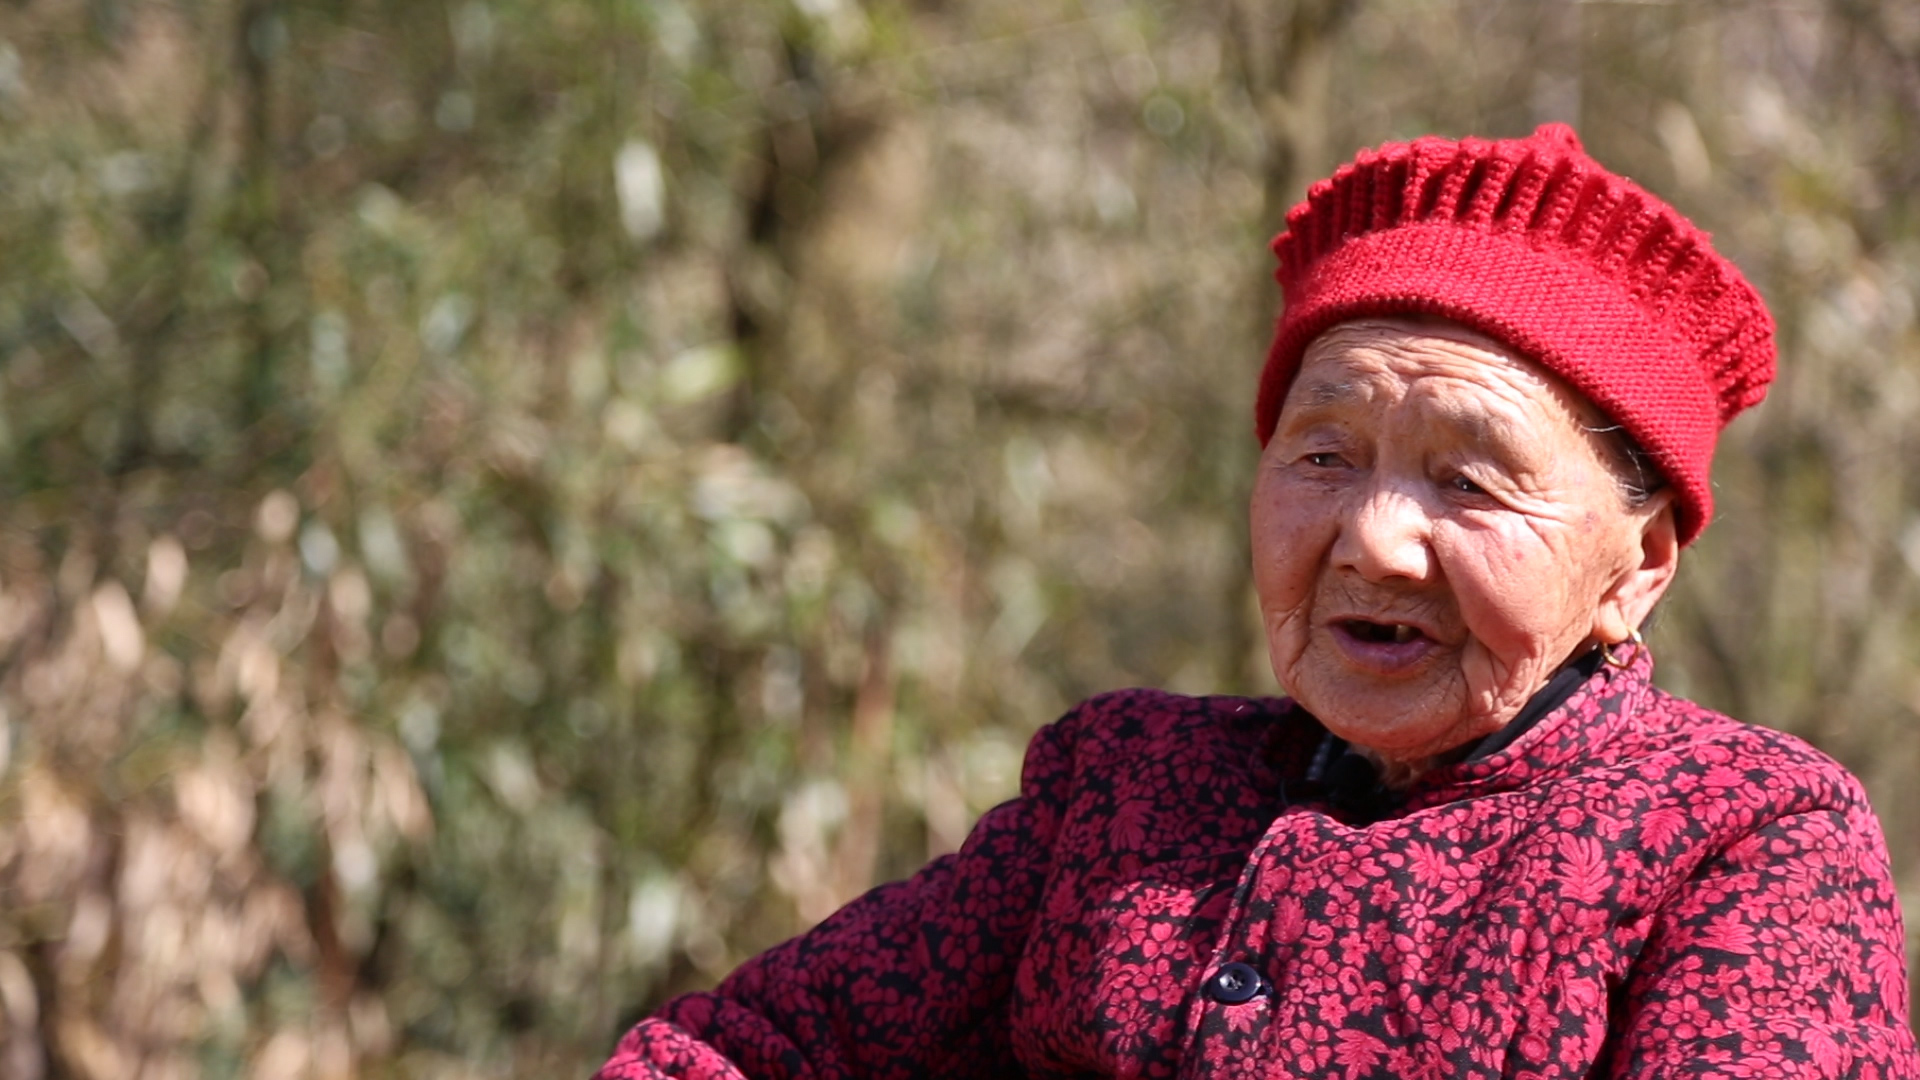 84岁老人邓秀英:生活如山,跋涉如歌,过日子就像唱山歌 用一辈子去坚持